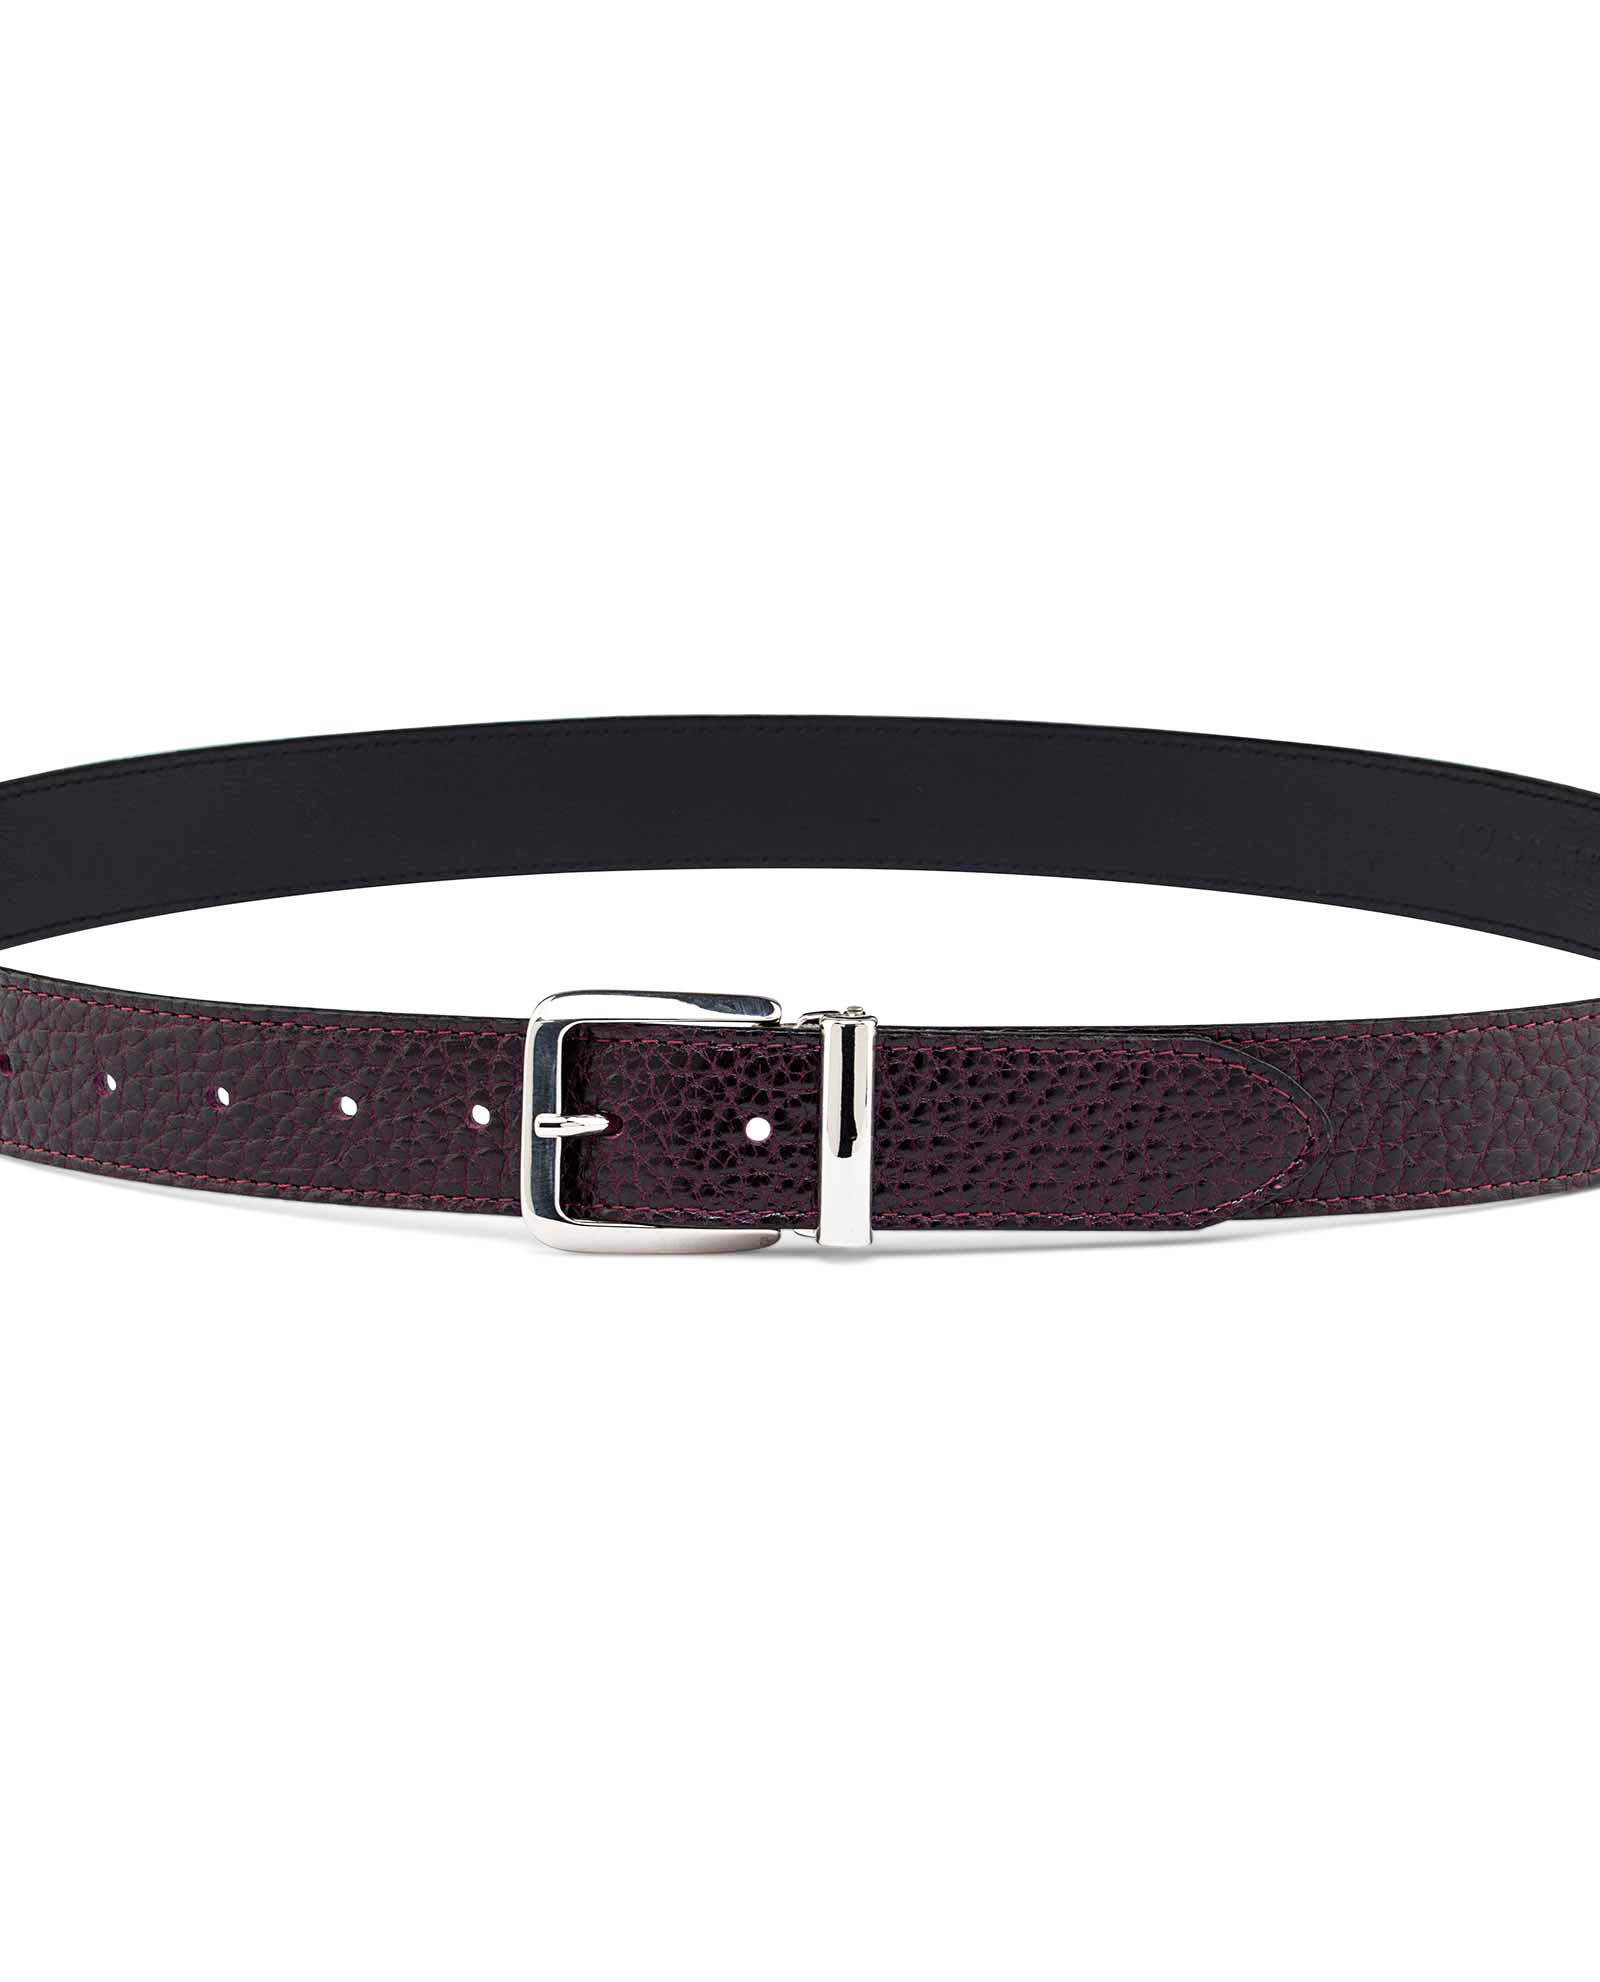 Buy Men's Maroon Leather Belt - LeatherBeltsOnline.com - Free Ship